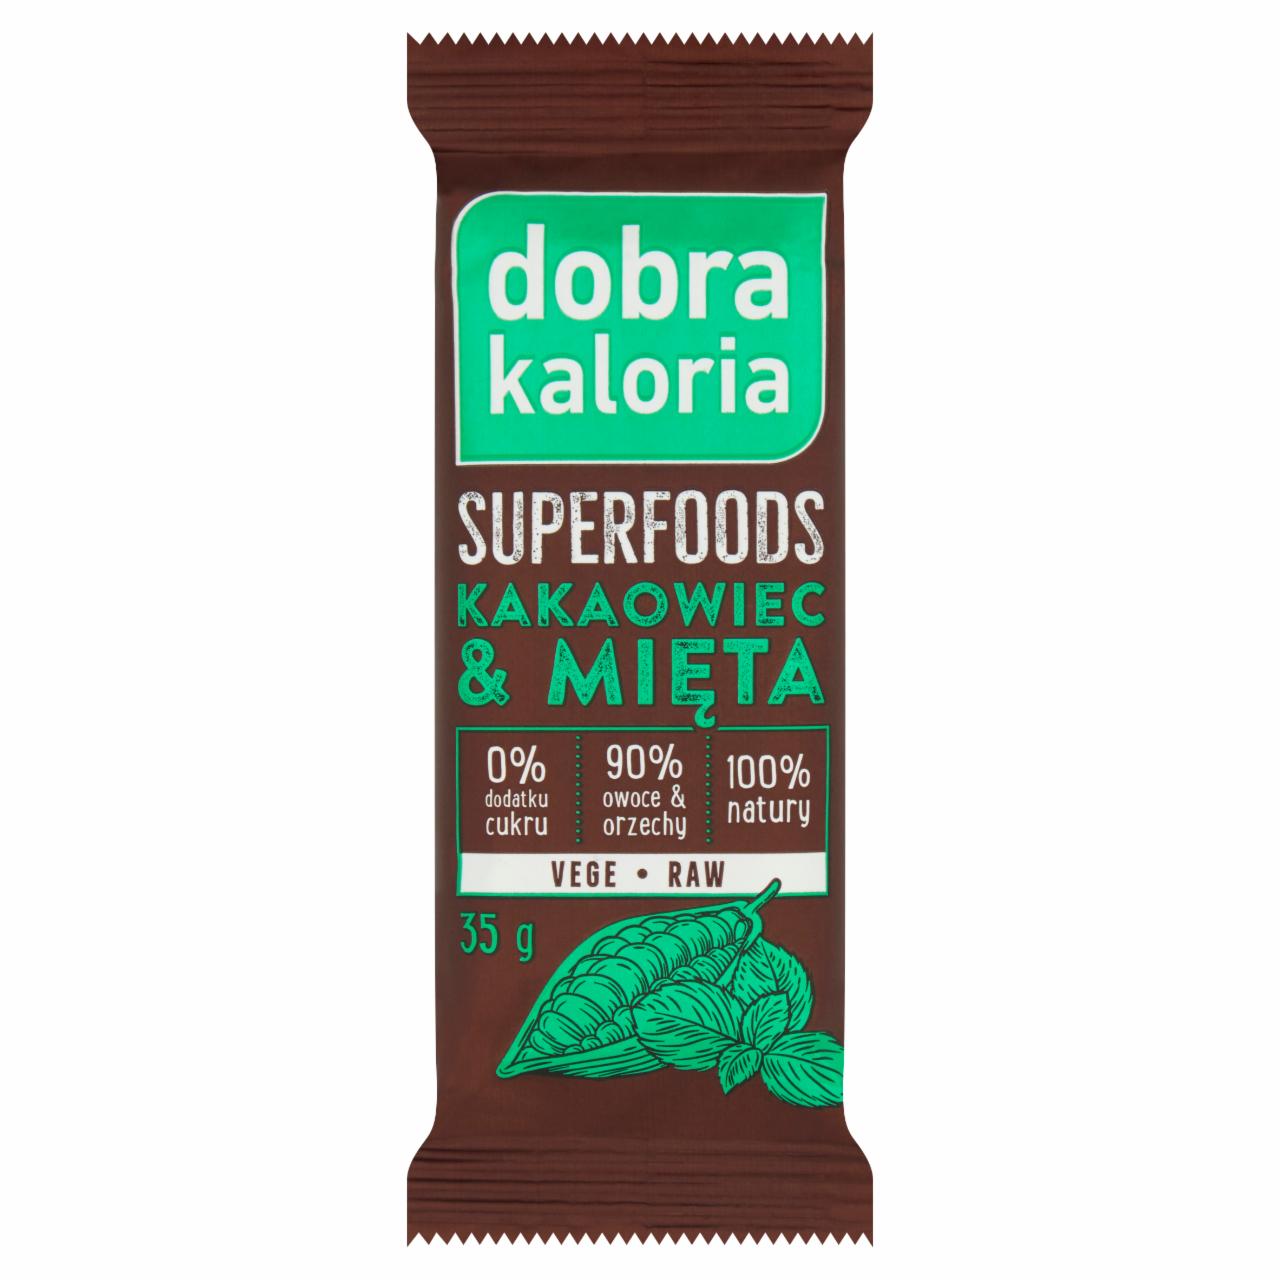 Zdjęcia - Dobra Kaloria Superfoods Baton owocowy kakaowiec & mięta 35 g